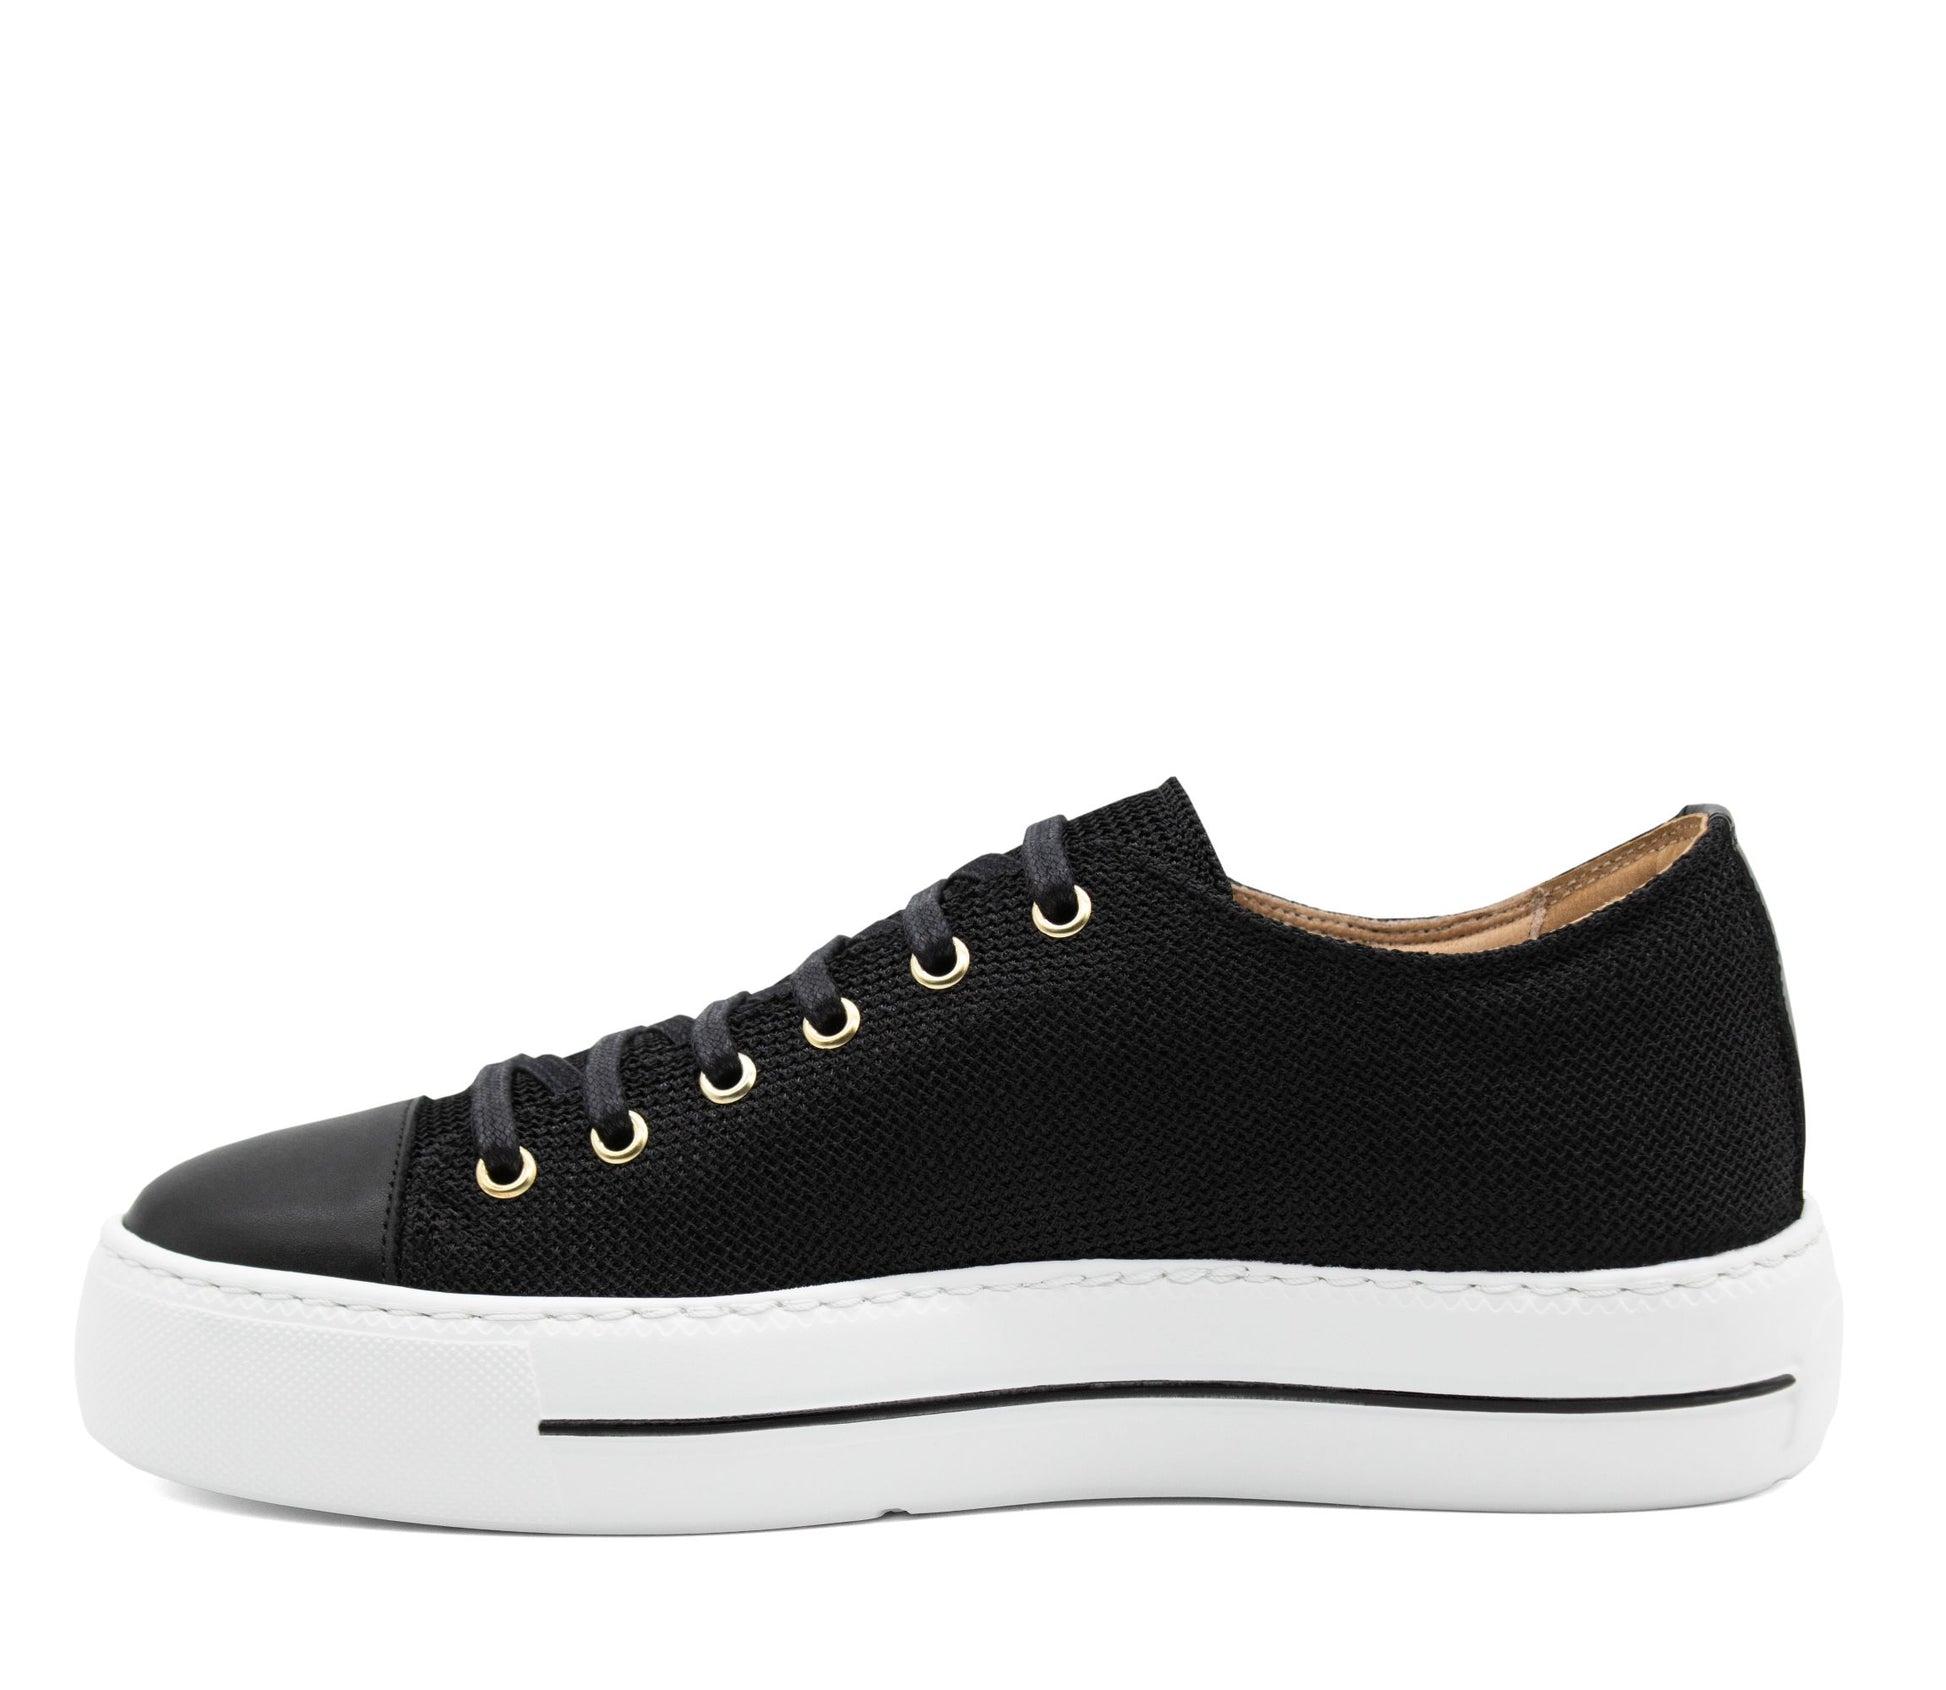 Cavalinho La Vie Sneaker - Black - 48080001.01_4